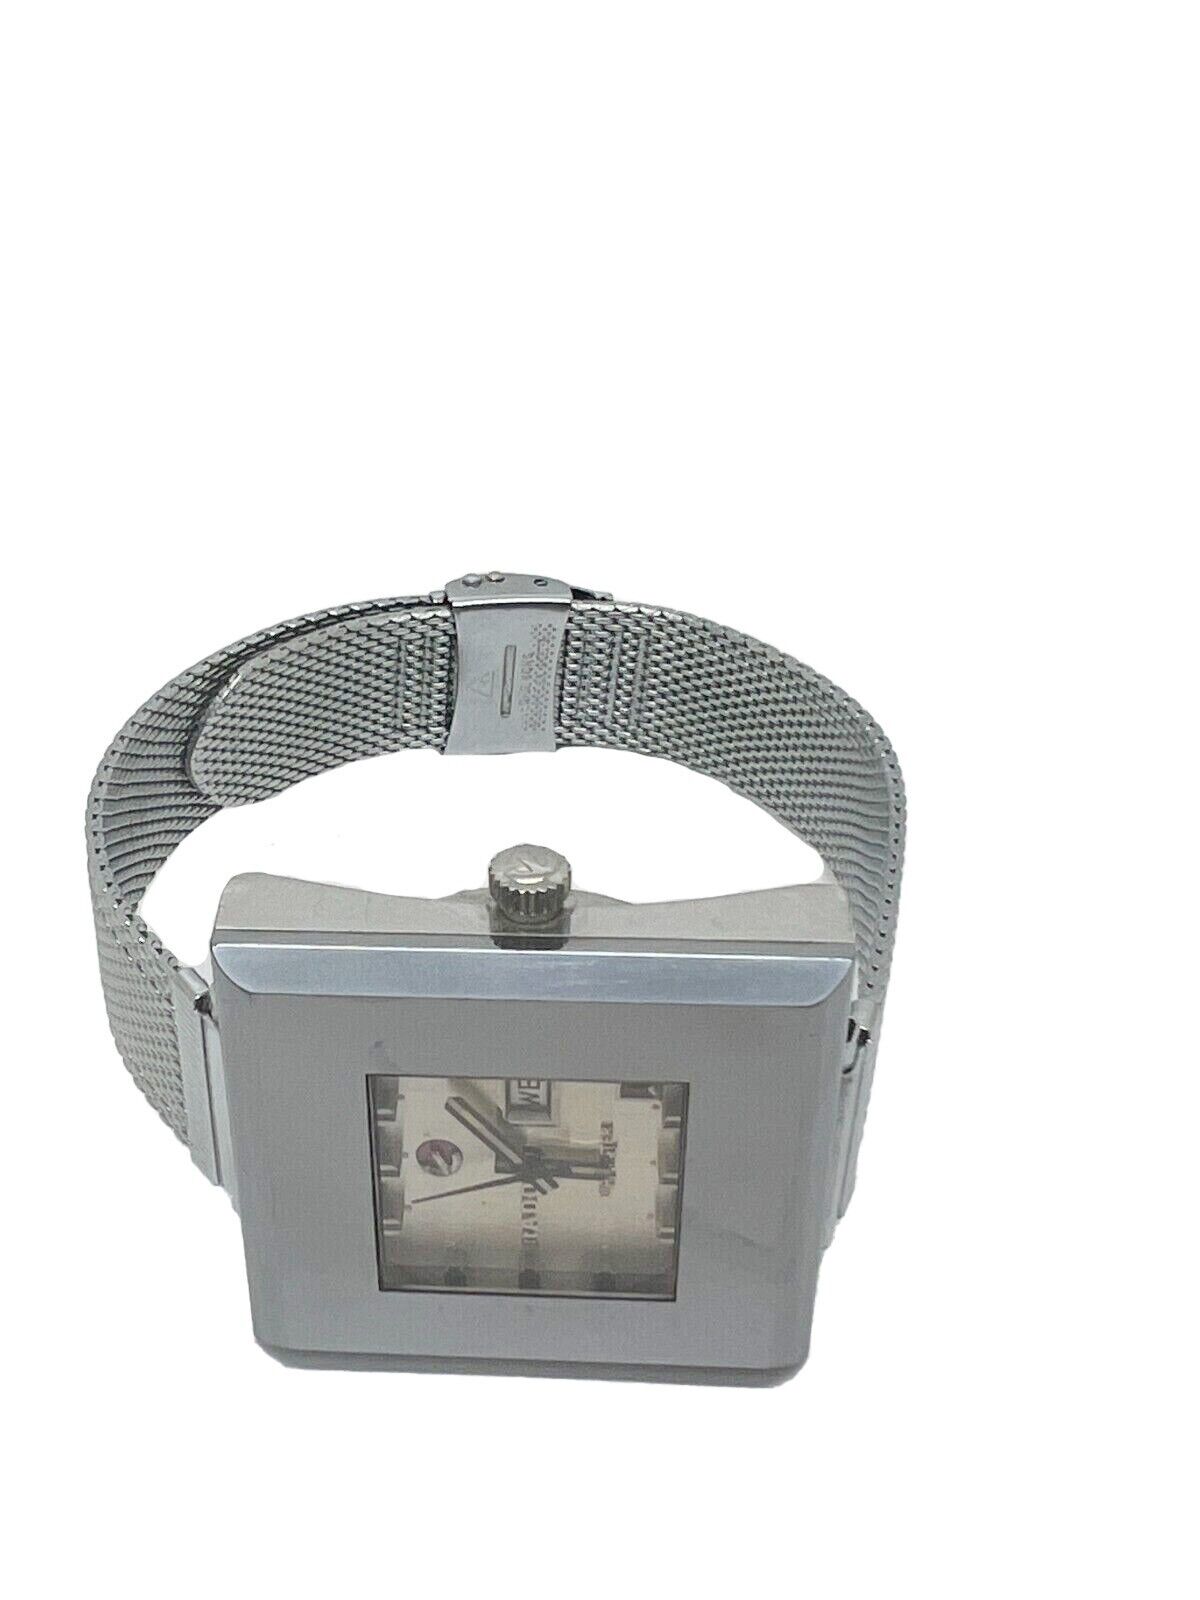 Rado DiaMaster 10 Tungsten Case Scratchproof Vintage Watch Rare!!